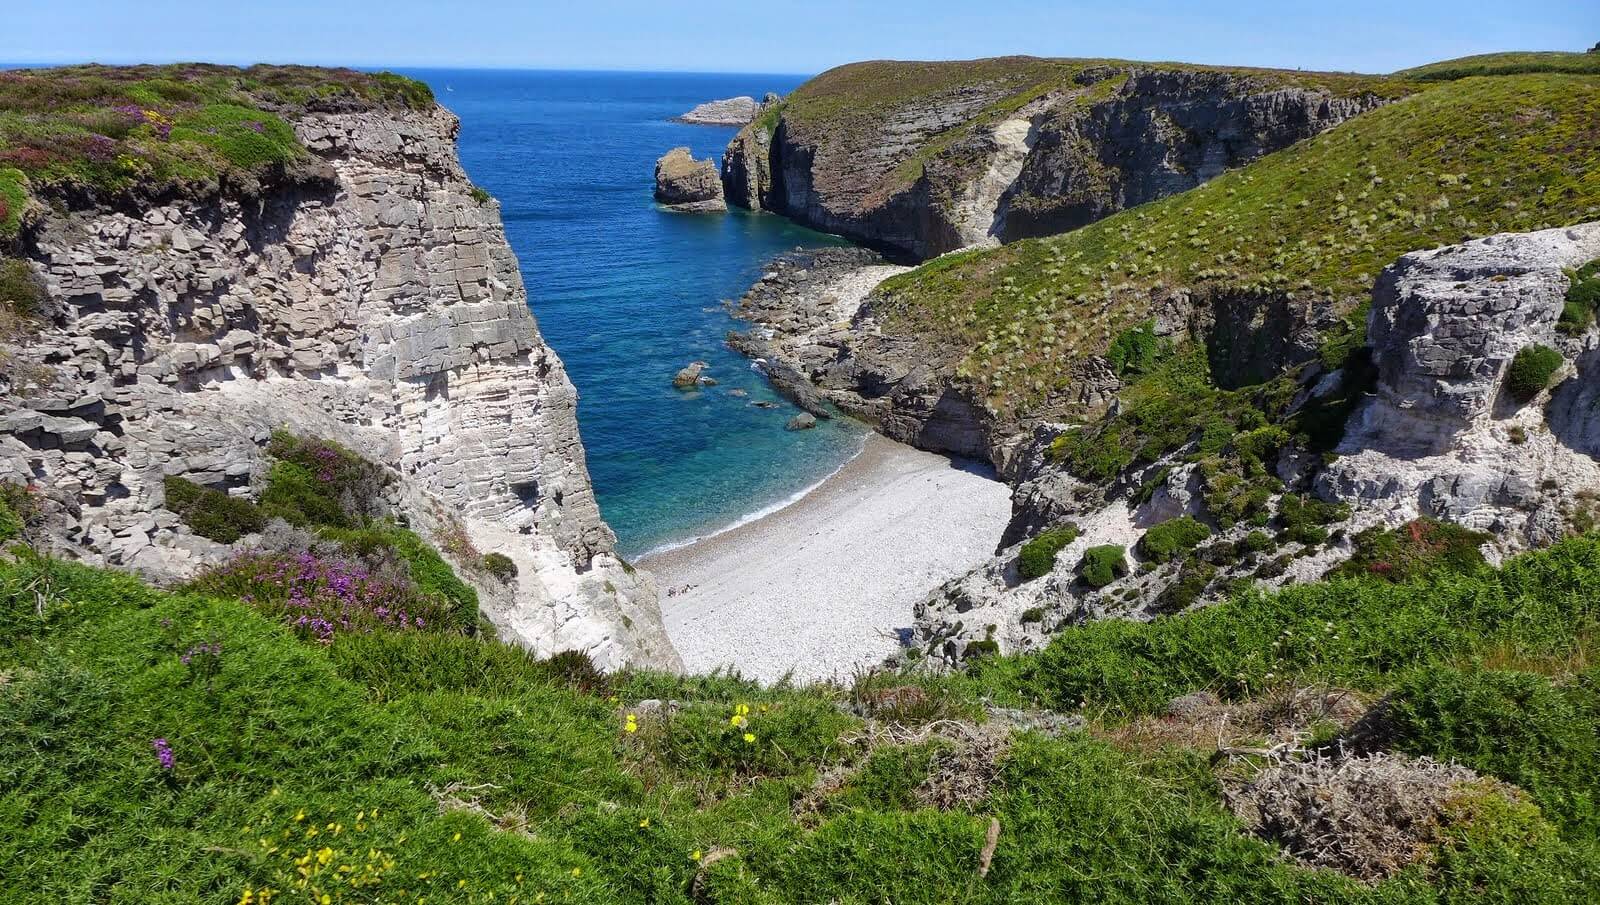 Entre terre et mer, la beauté sans pareil du Cap d'Erquy ©Grand site cap d'Erquy cap Fréhel